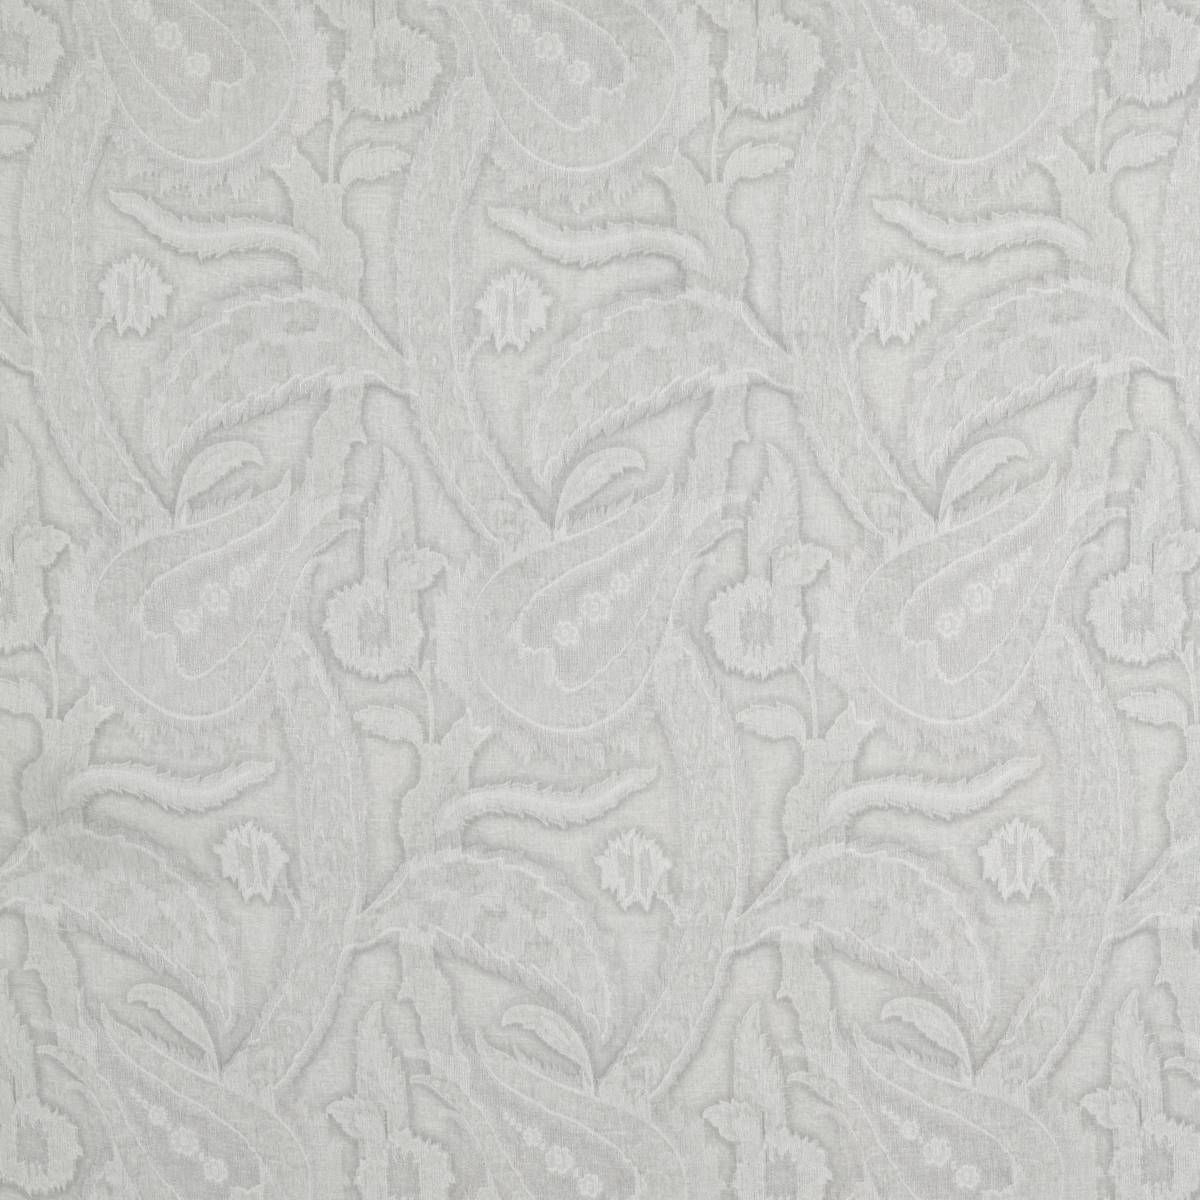 Oberon Stone Fabric by Zoffany